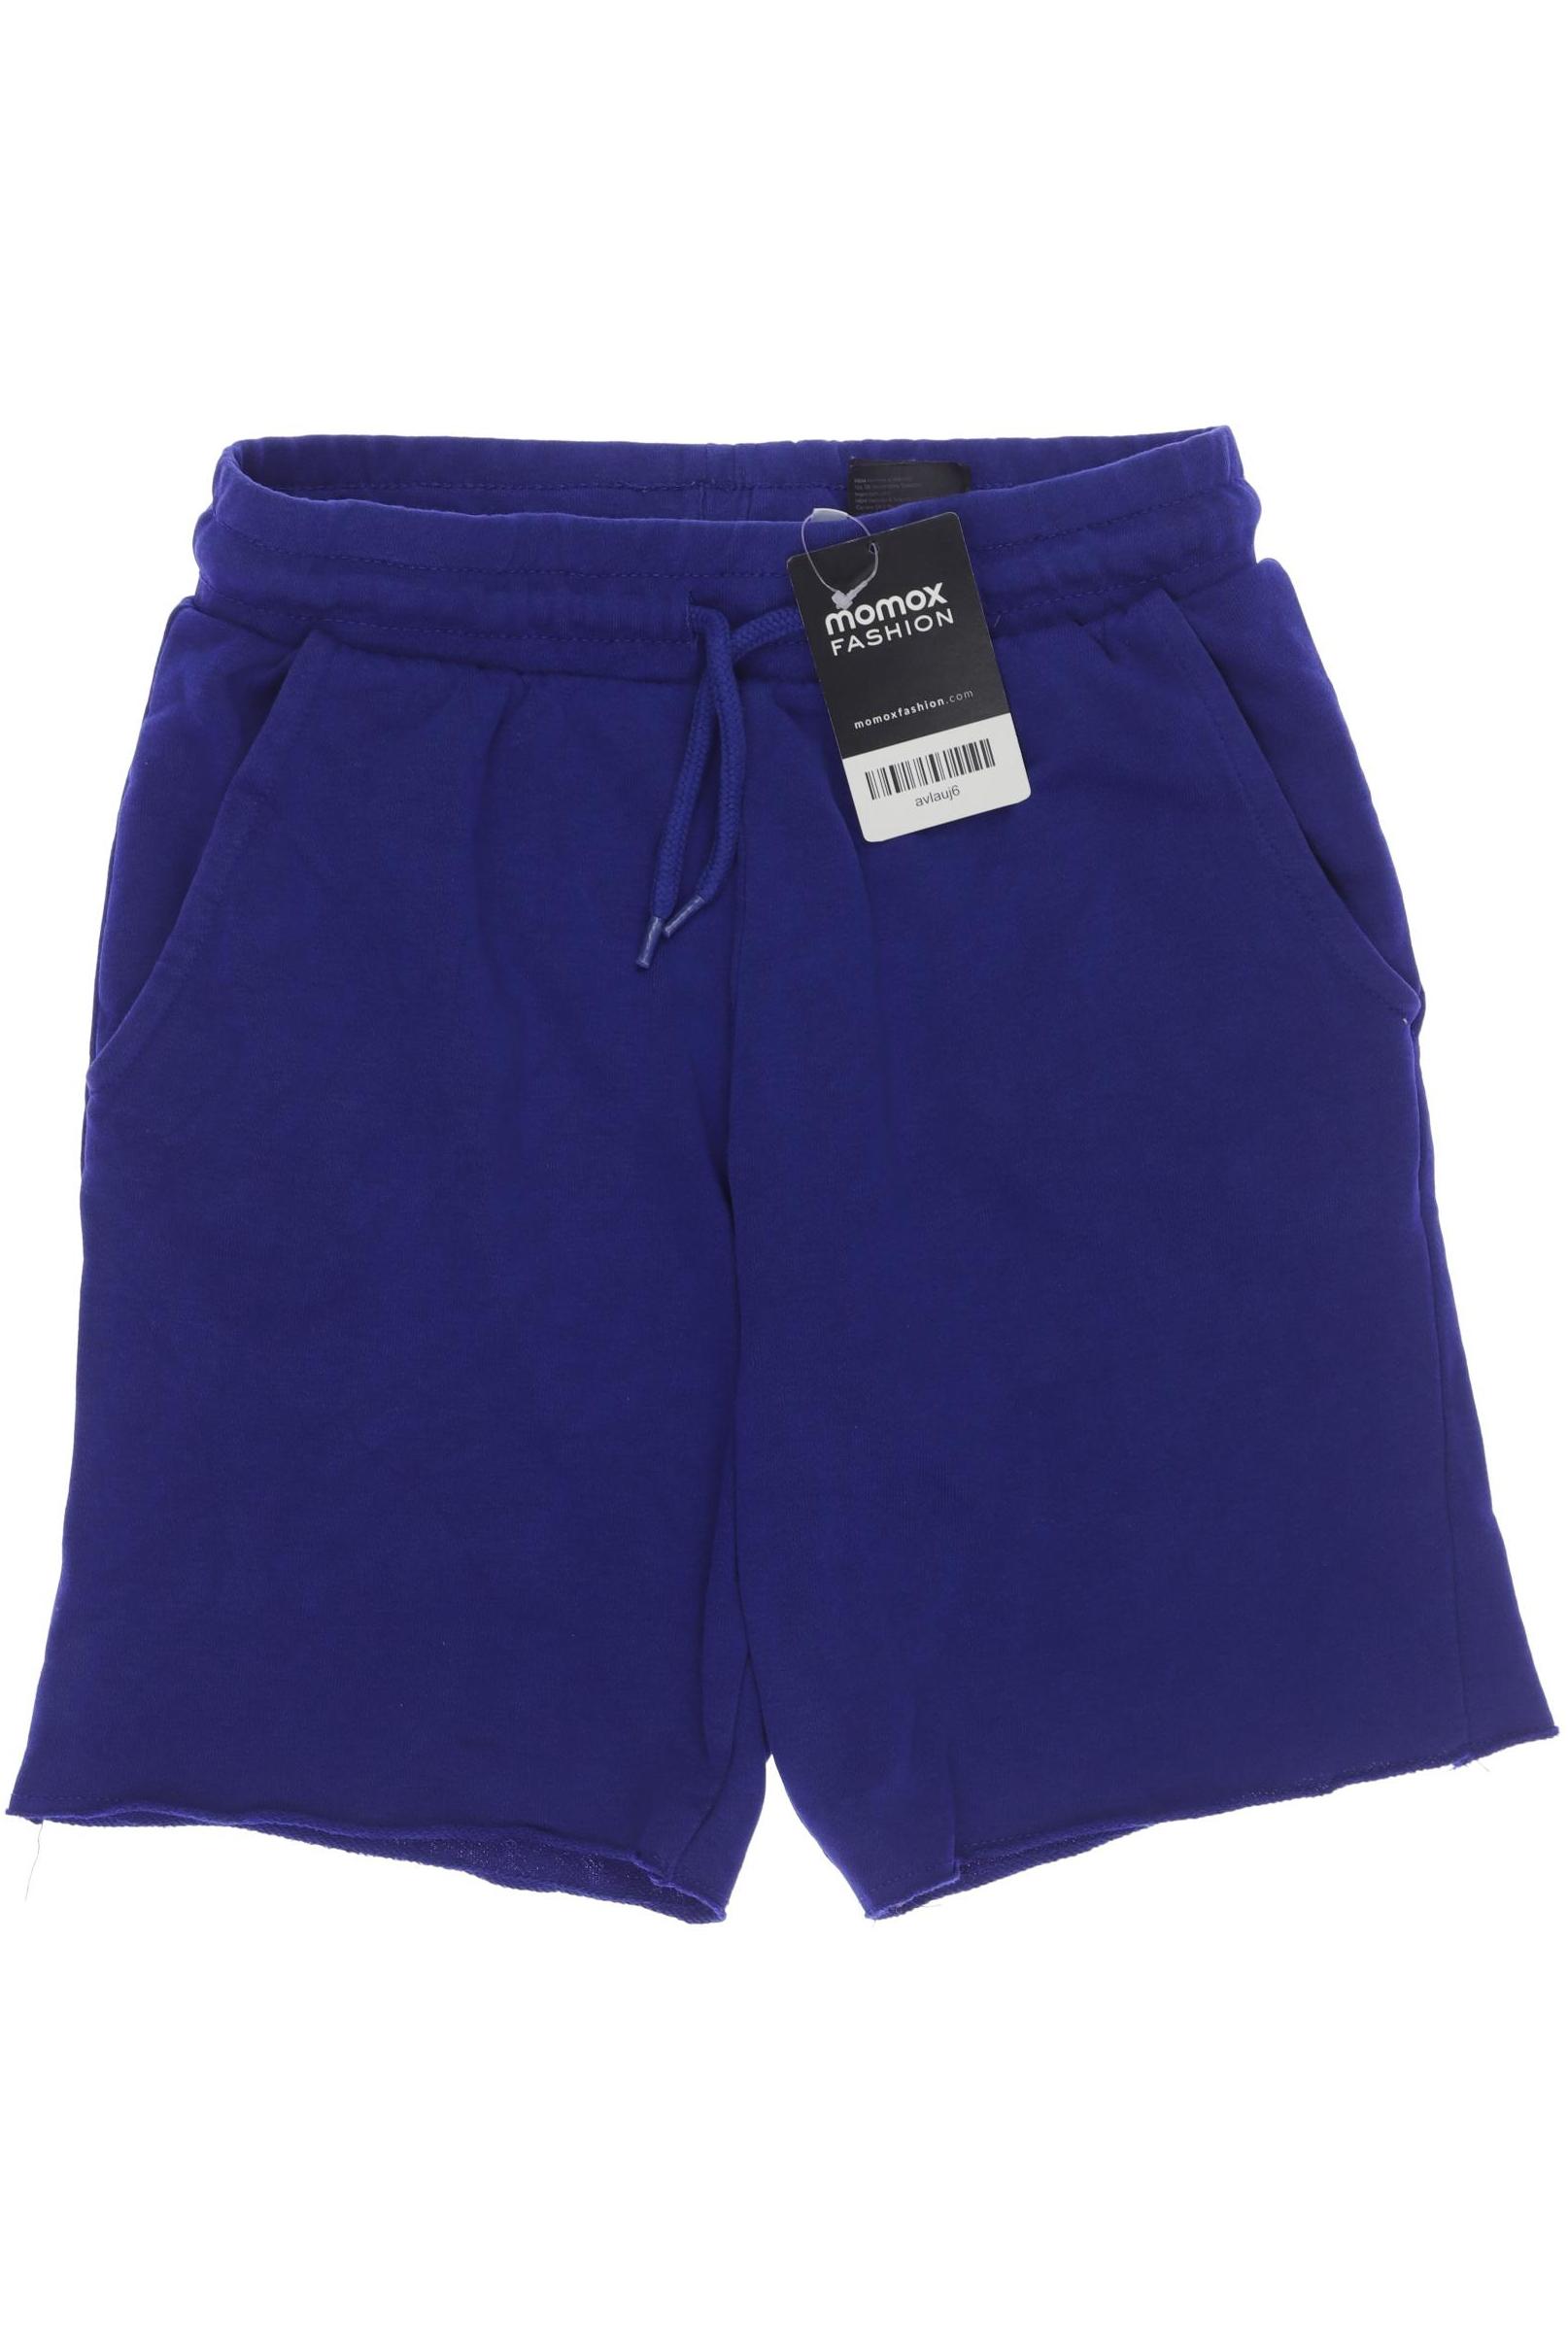 H&M Herren Shorts, blau, Gr. 152 von H&M